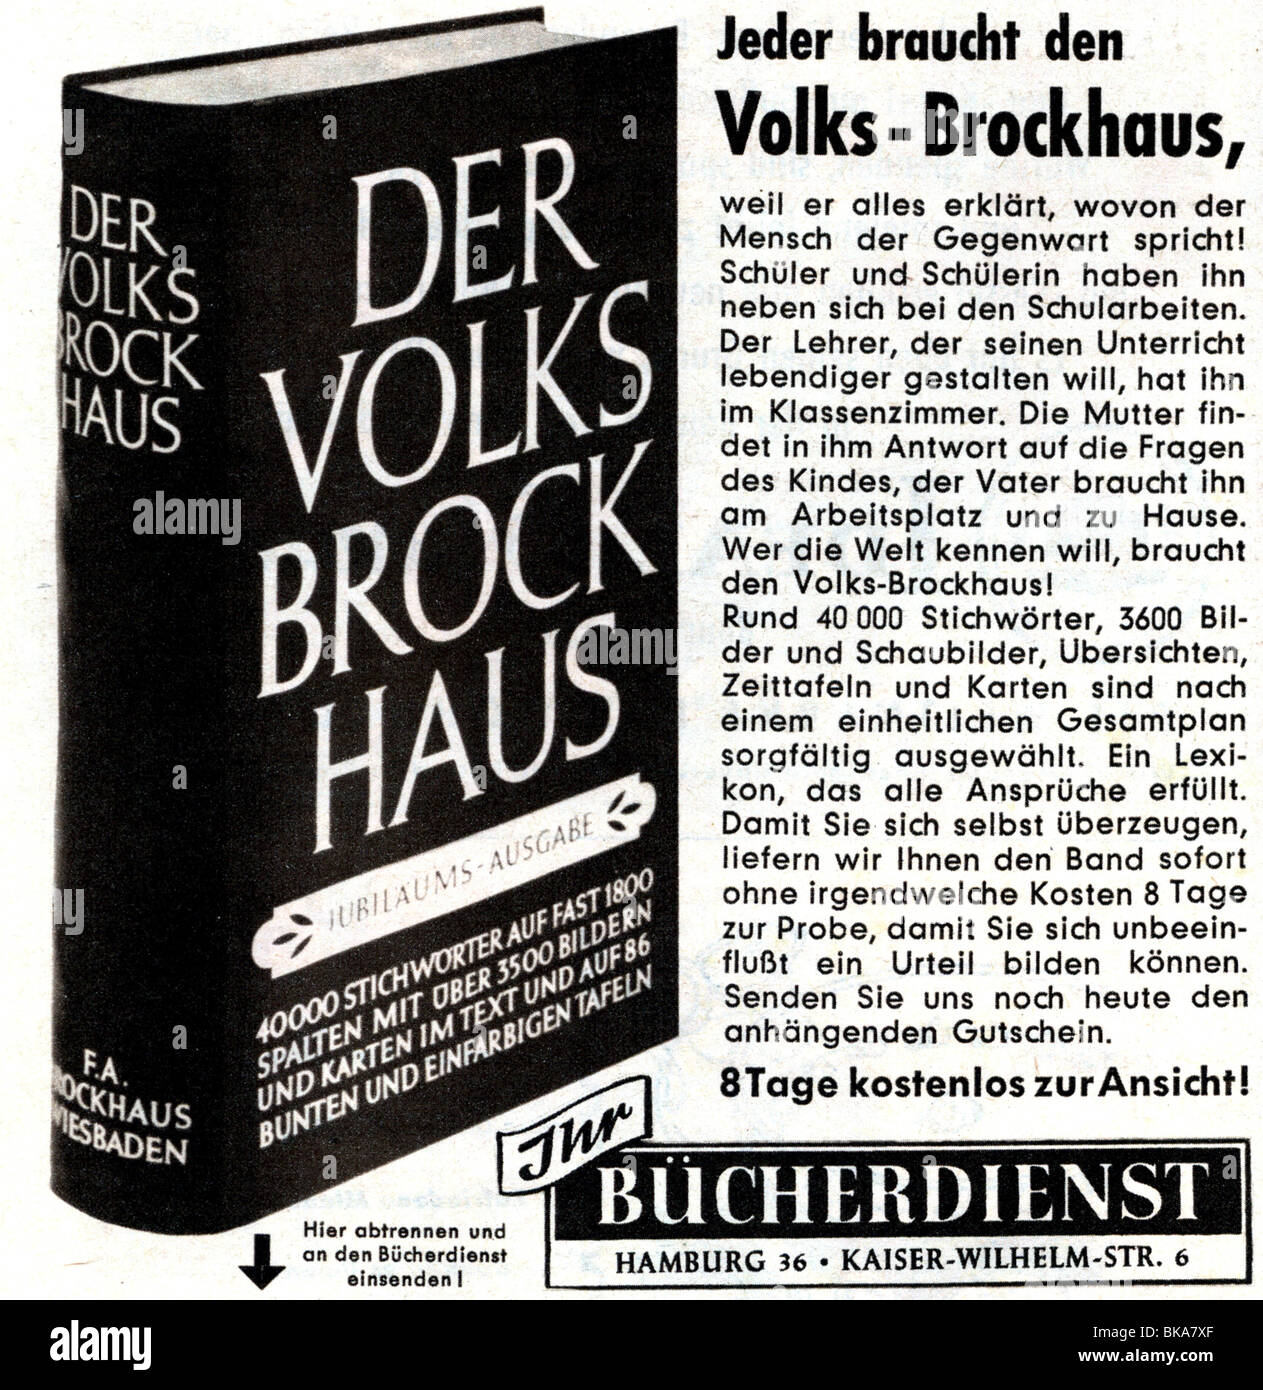 Werbung, Literatur, Volks-Brockhaus, Werbung in der Zeitschrift "Revue", Nummer 52, 1955, Stockfoto